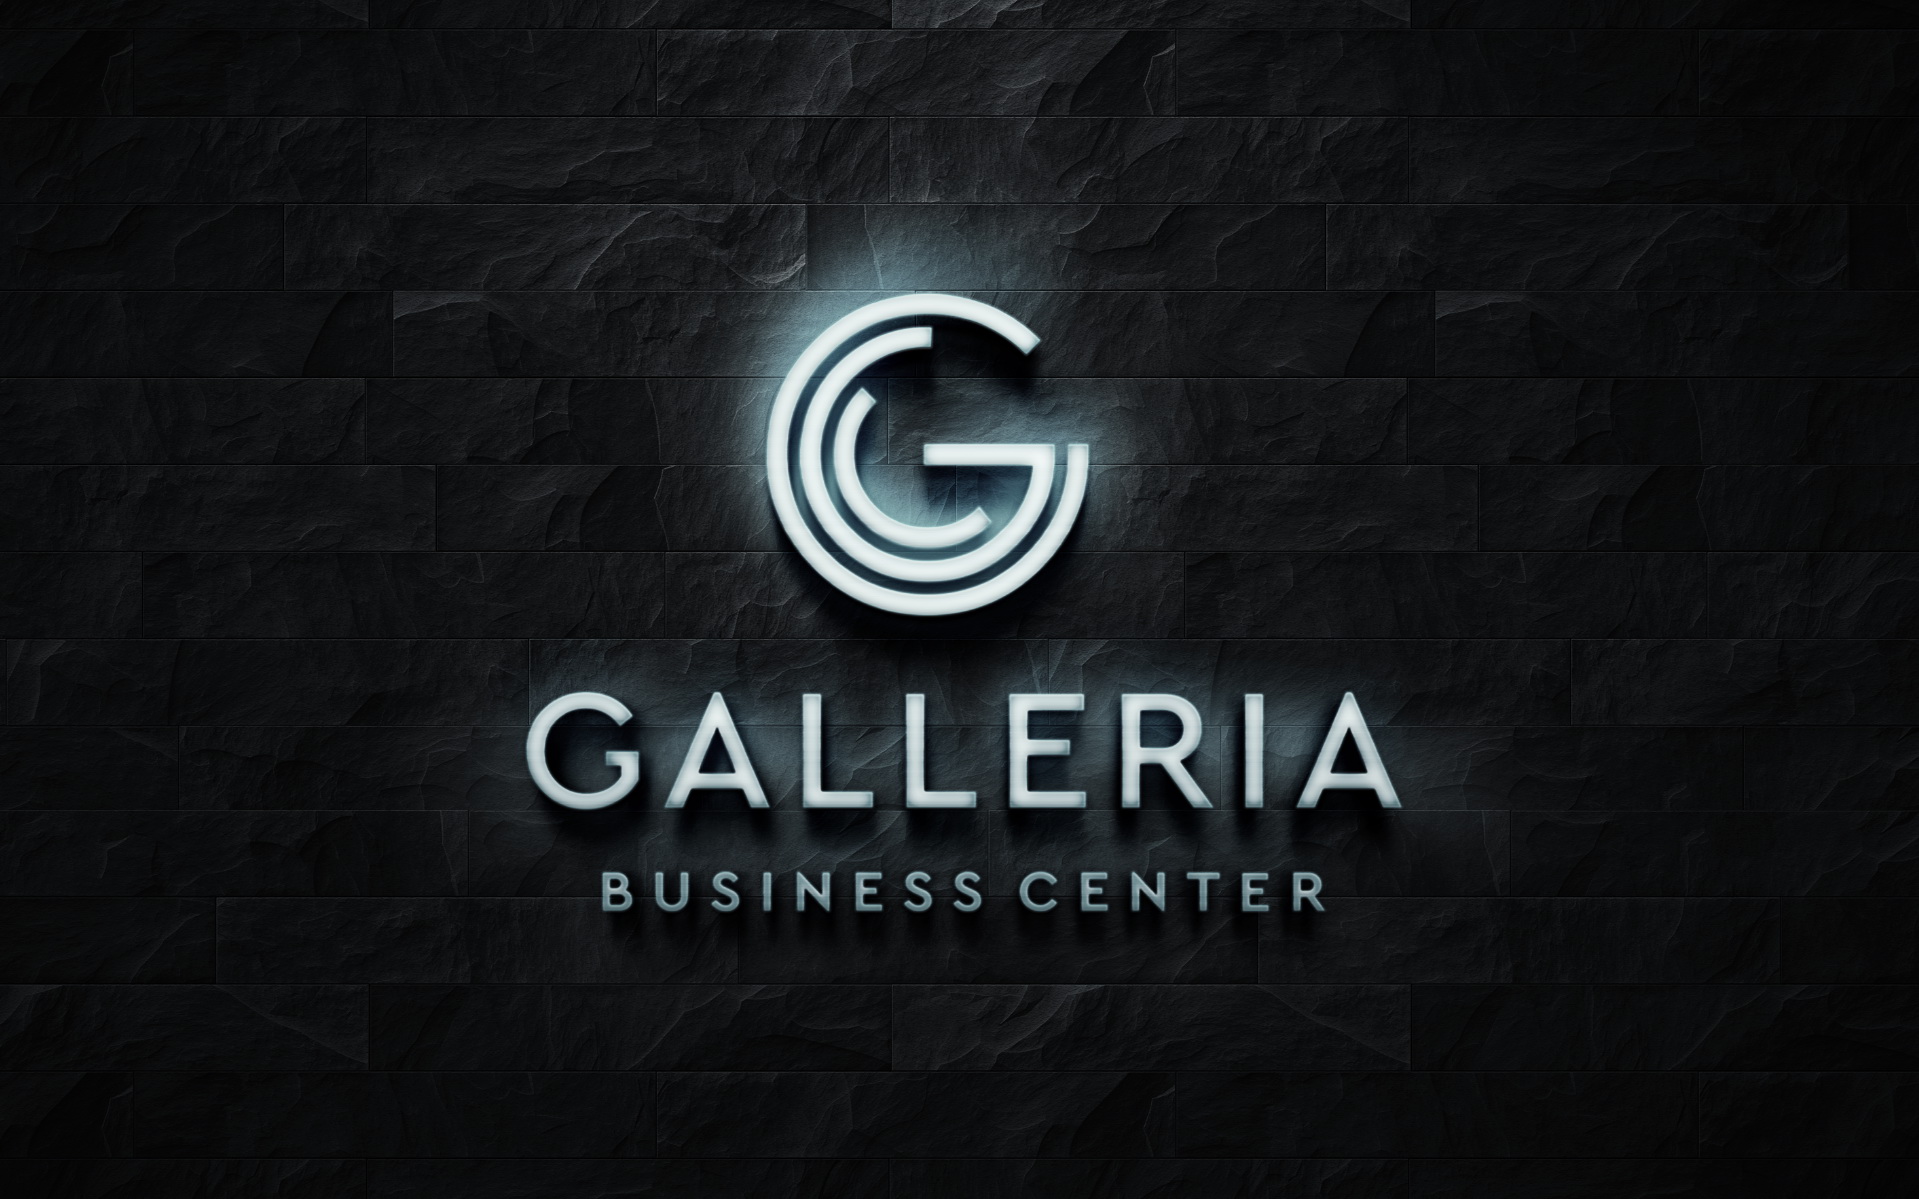 Galleria Business Center